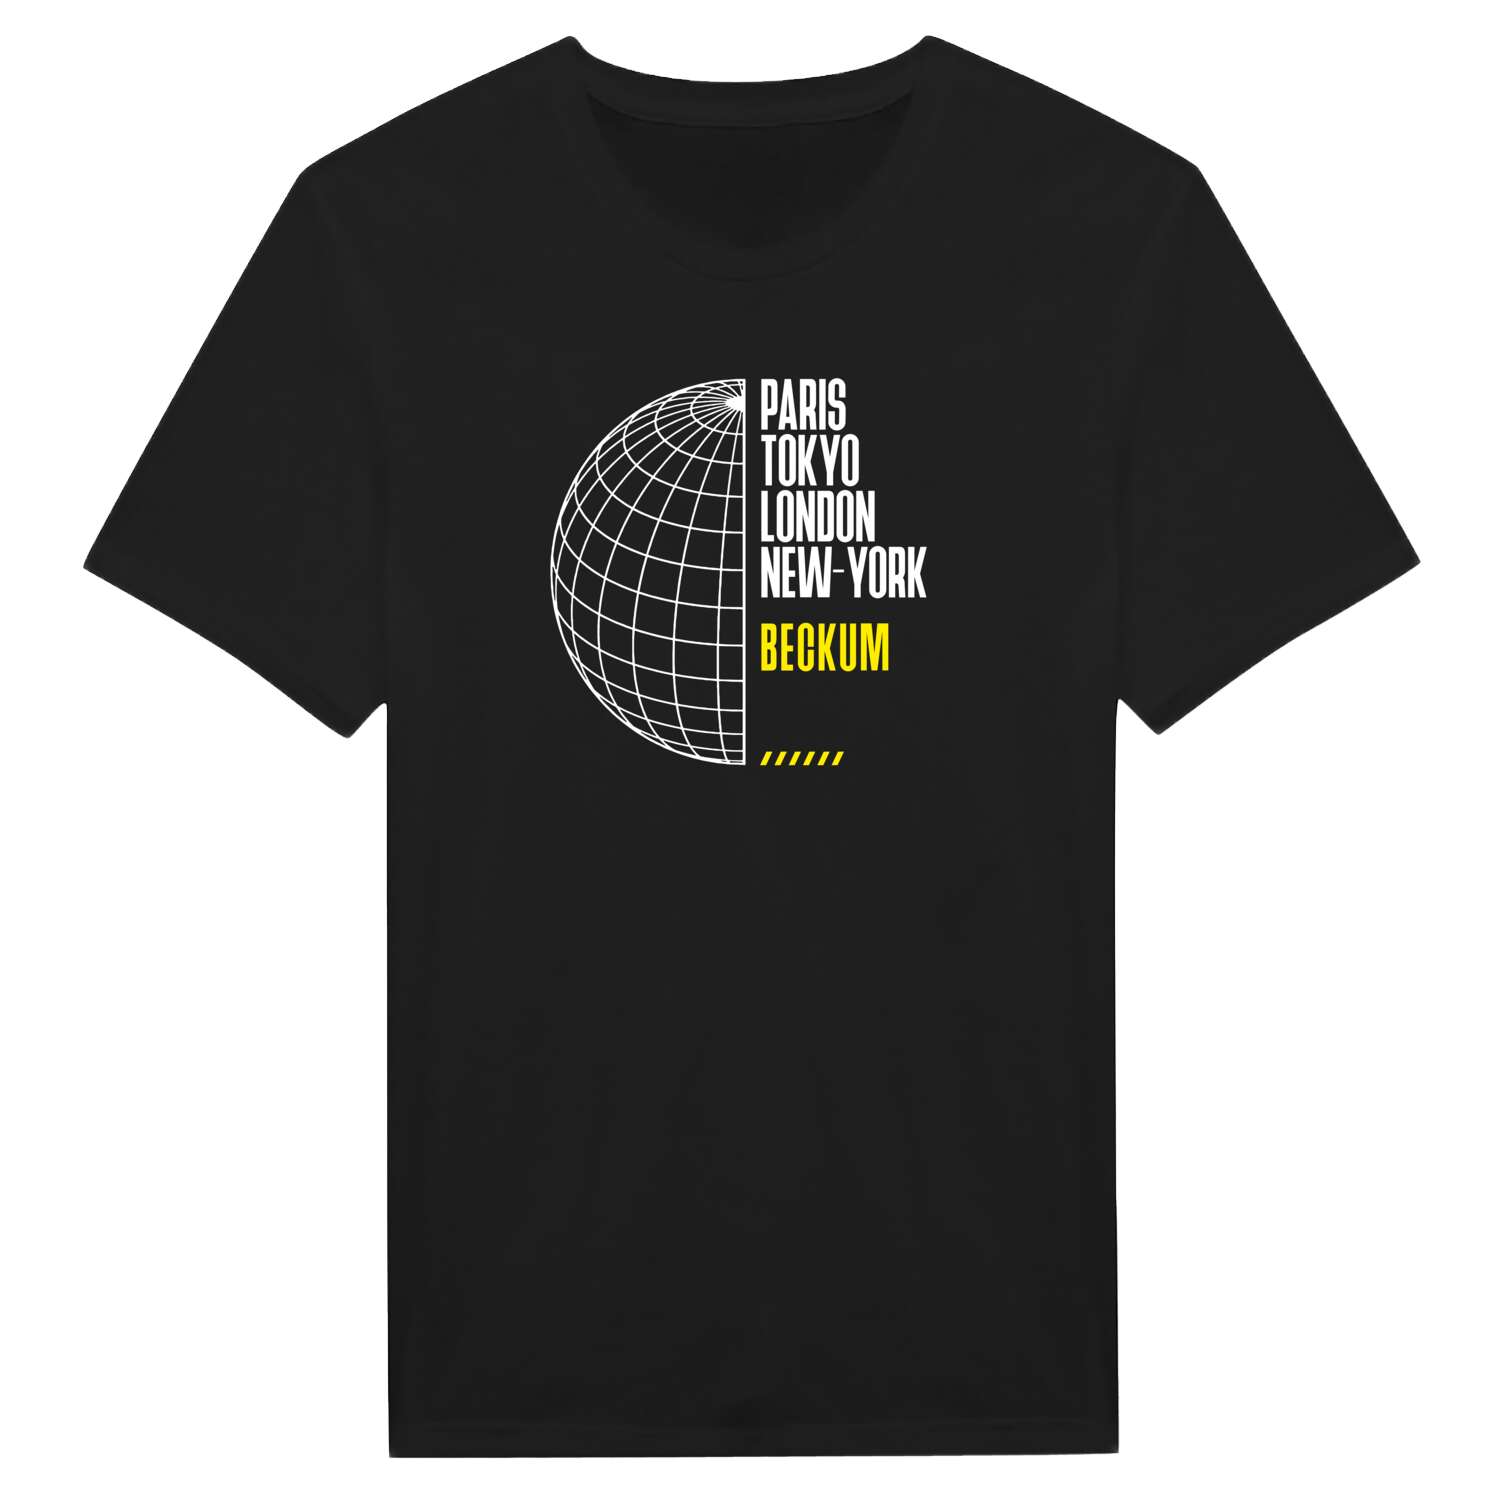 Beckum T-Shirt »Paris Tokyo London«